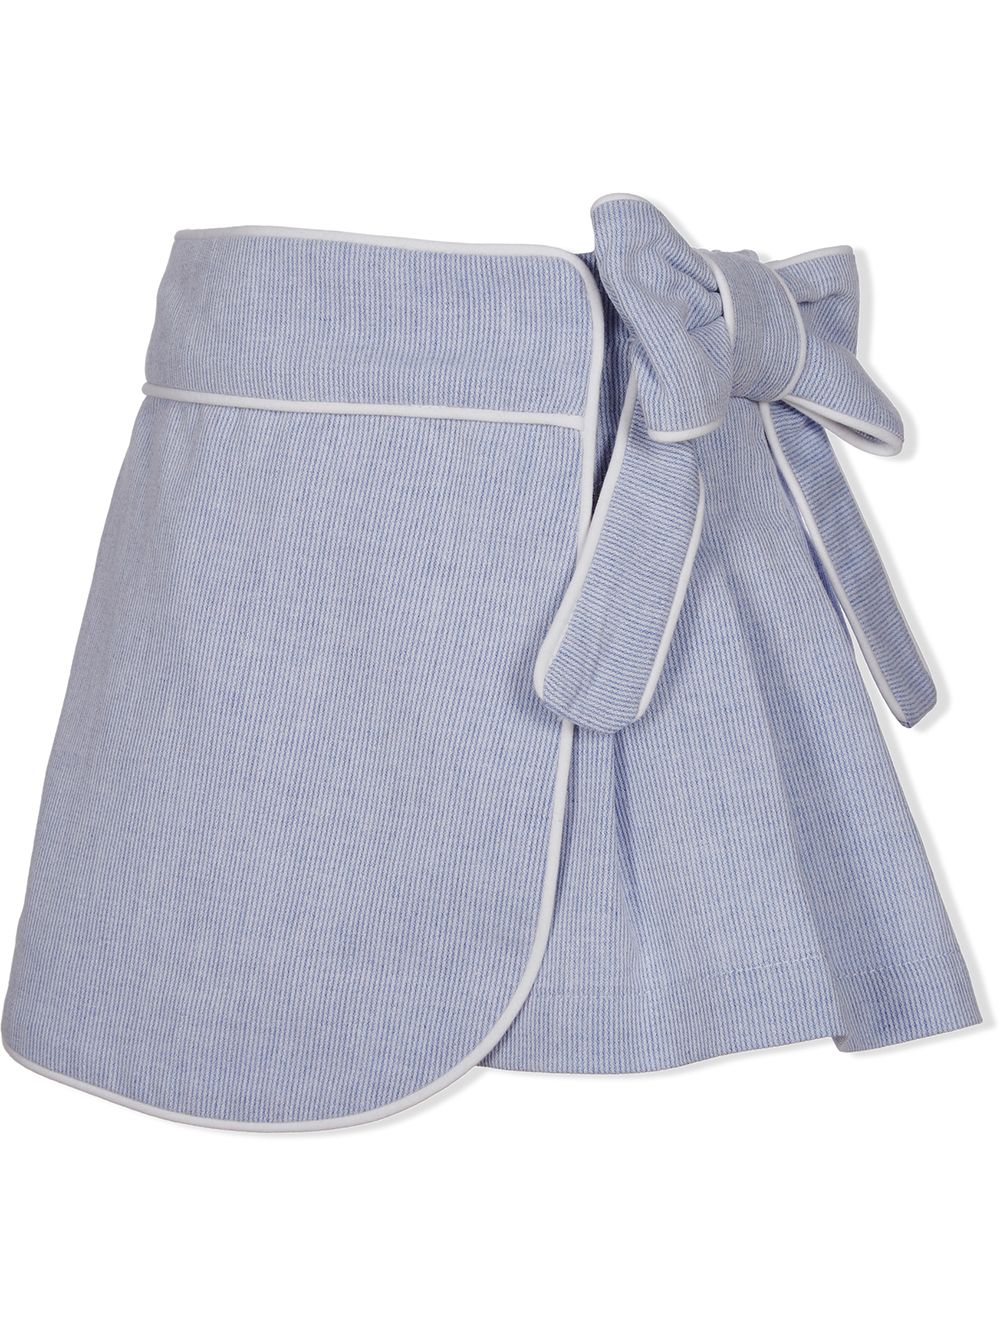 фото Lapin house юбка-шорты в полоску с запахом